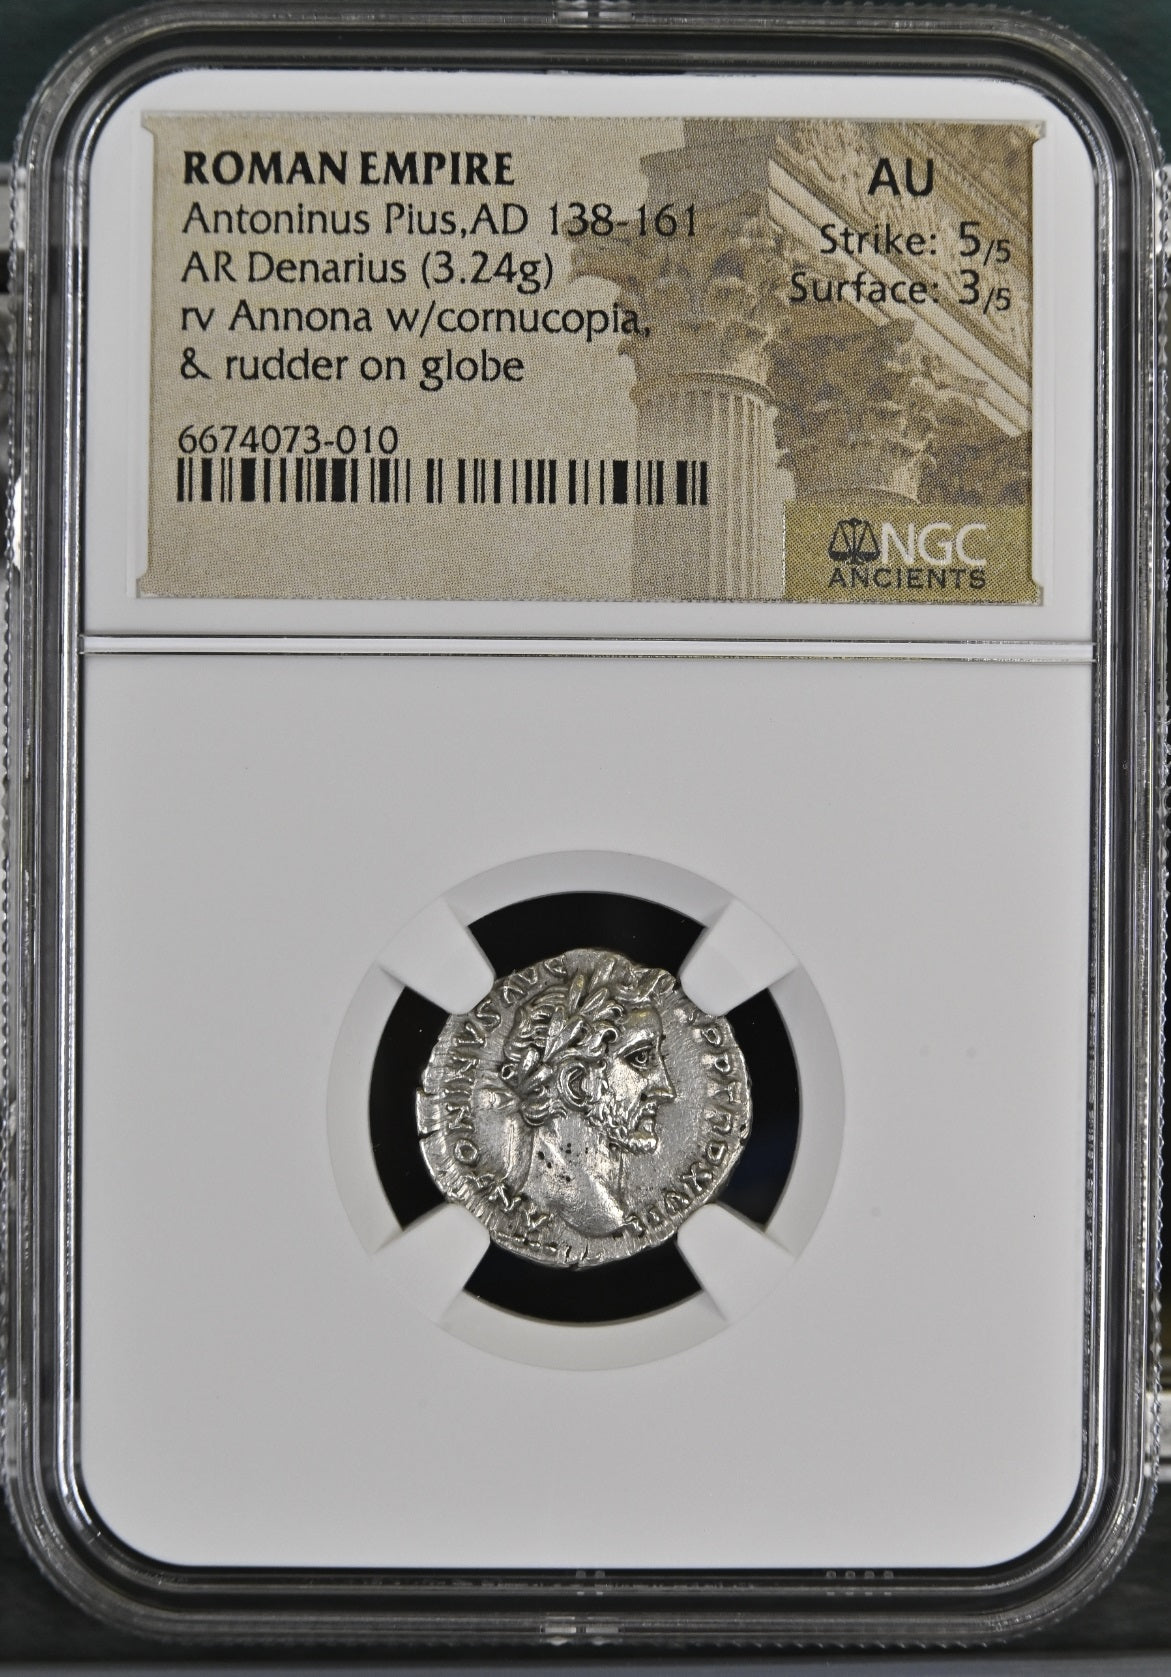 Roman Empire - Antoninus Pius - Silver Denarius - NGC AU - RIC:222